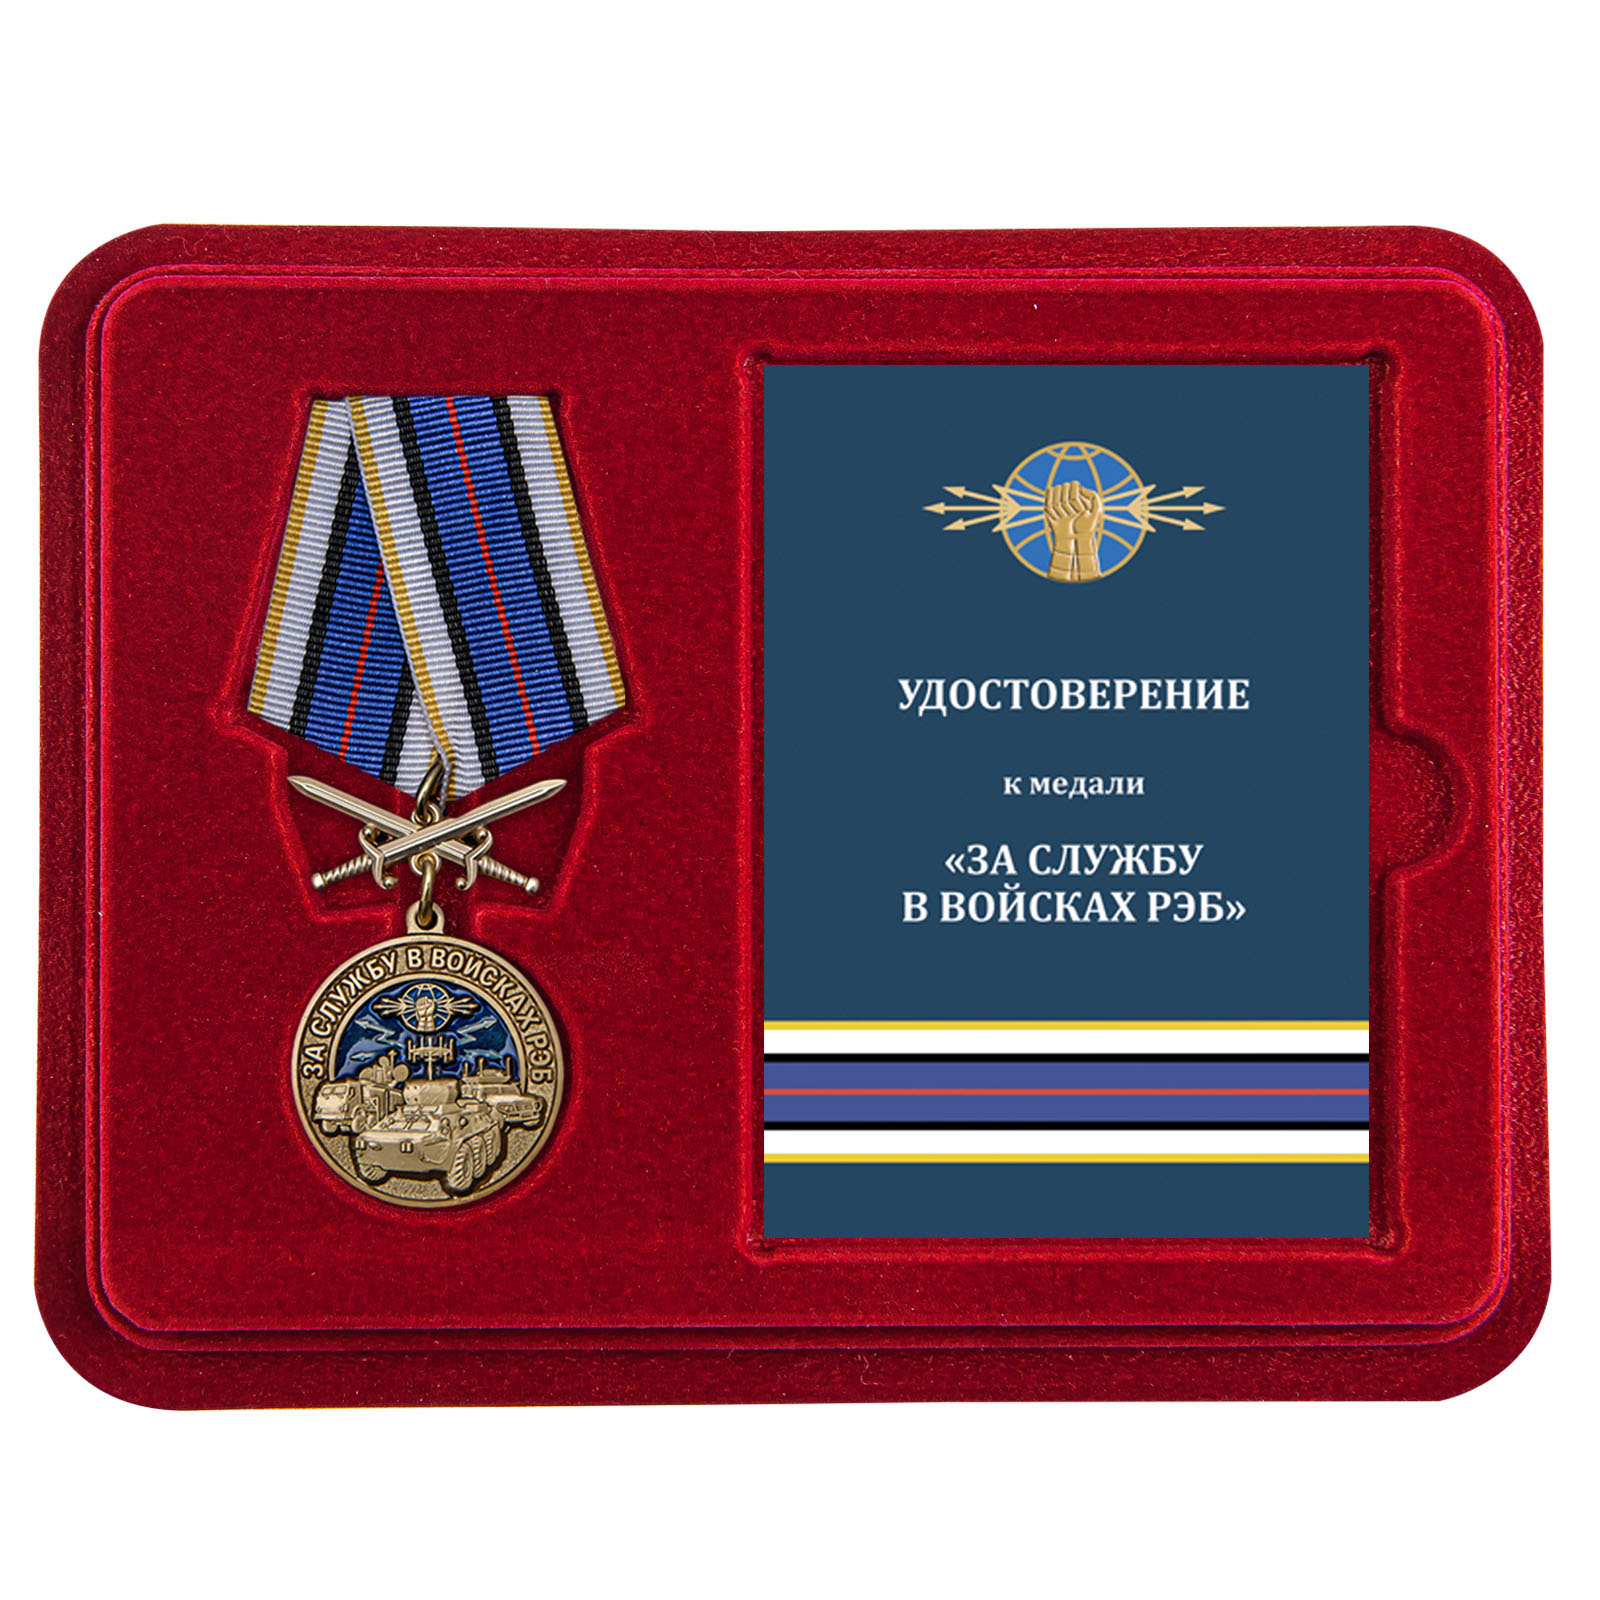 Купить медаль За службу в войсках РЭБ по выгодной цене